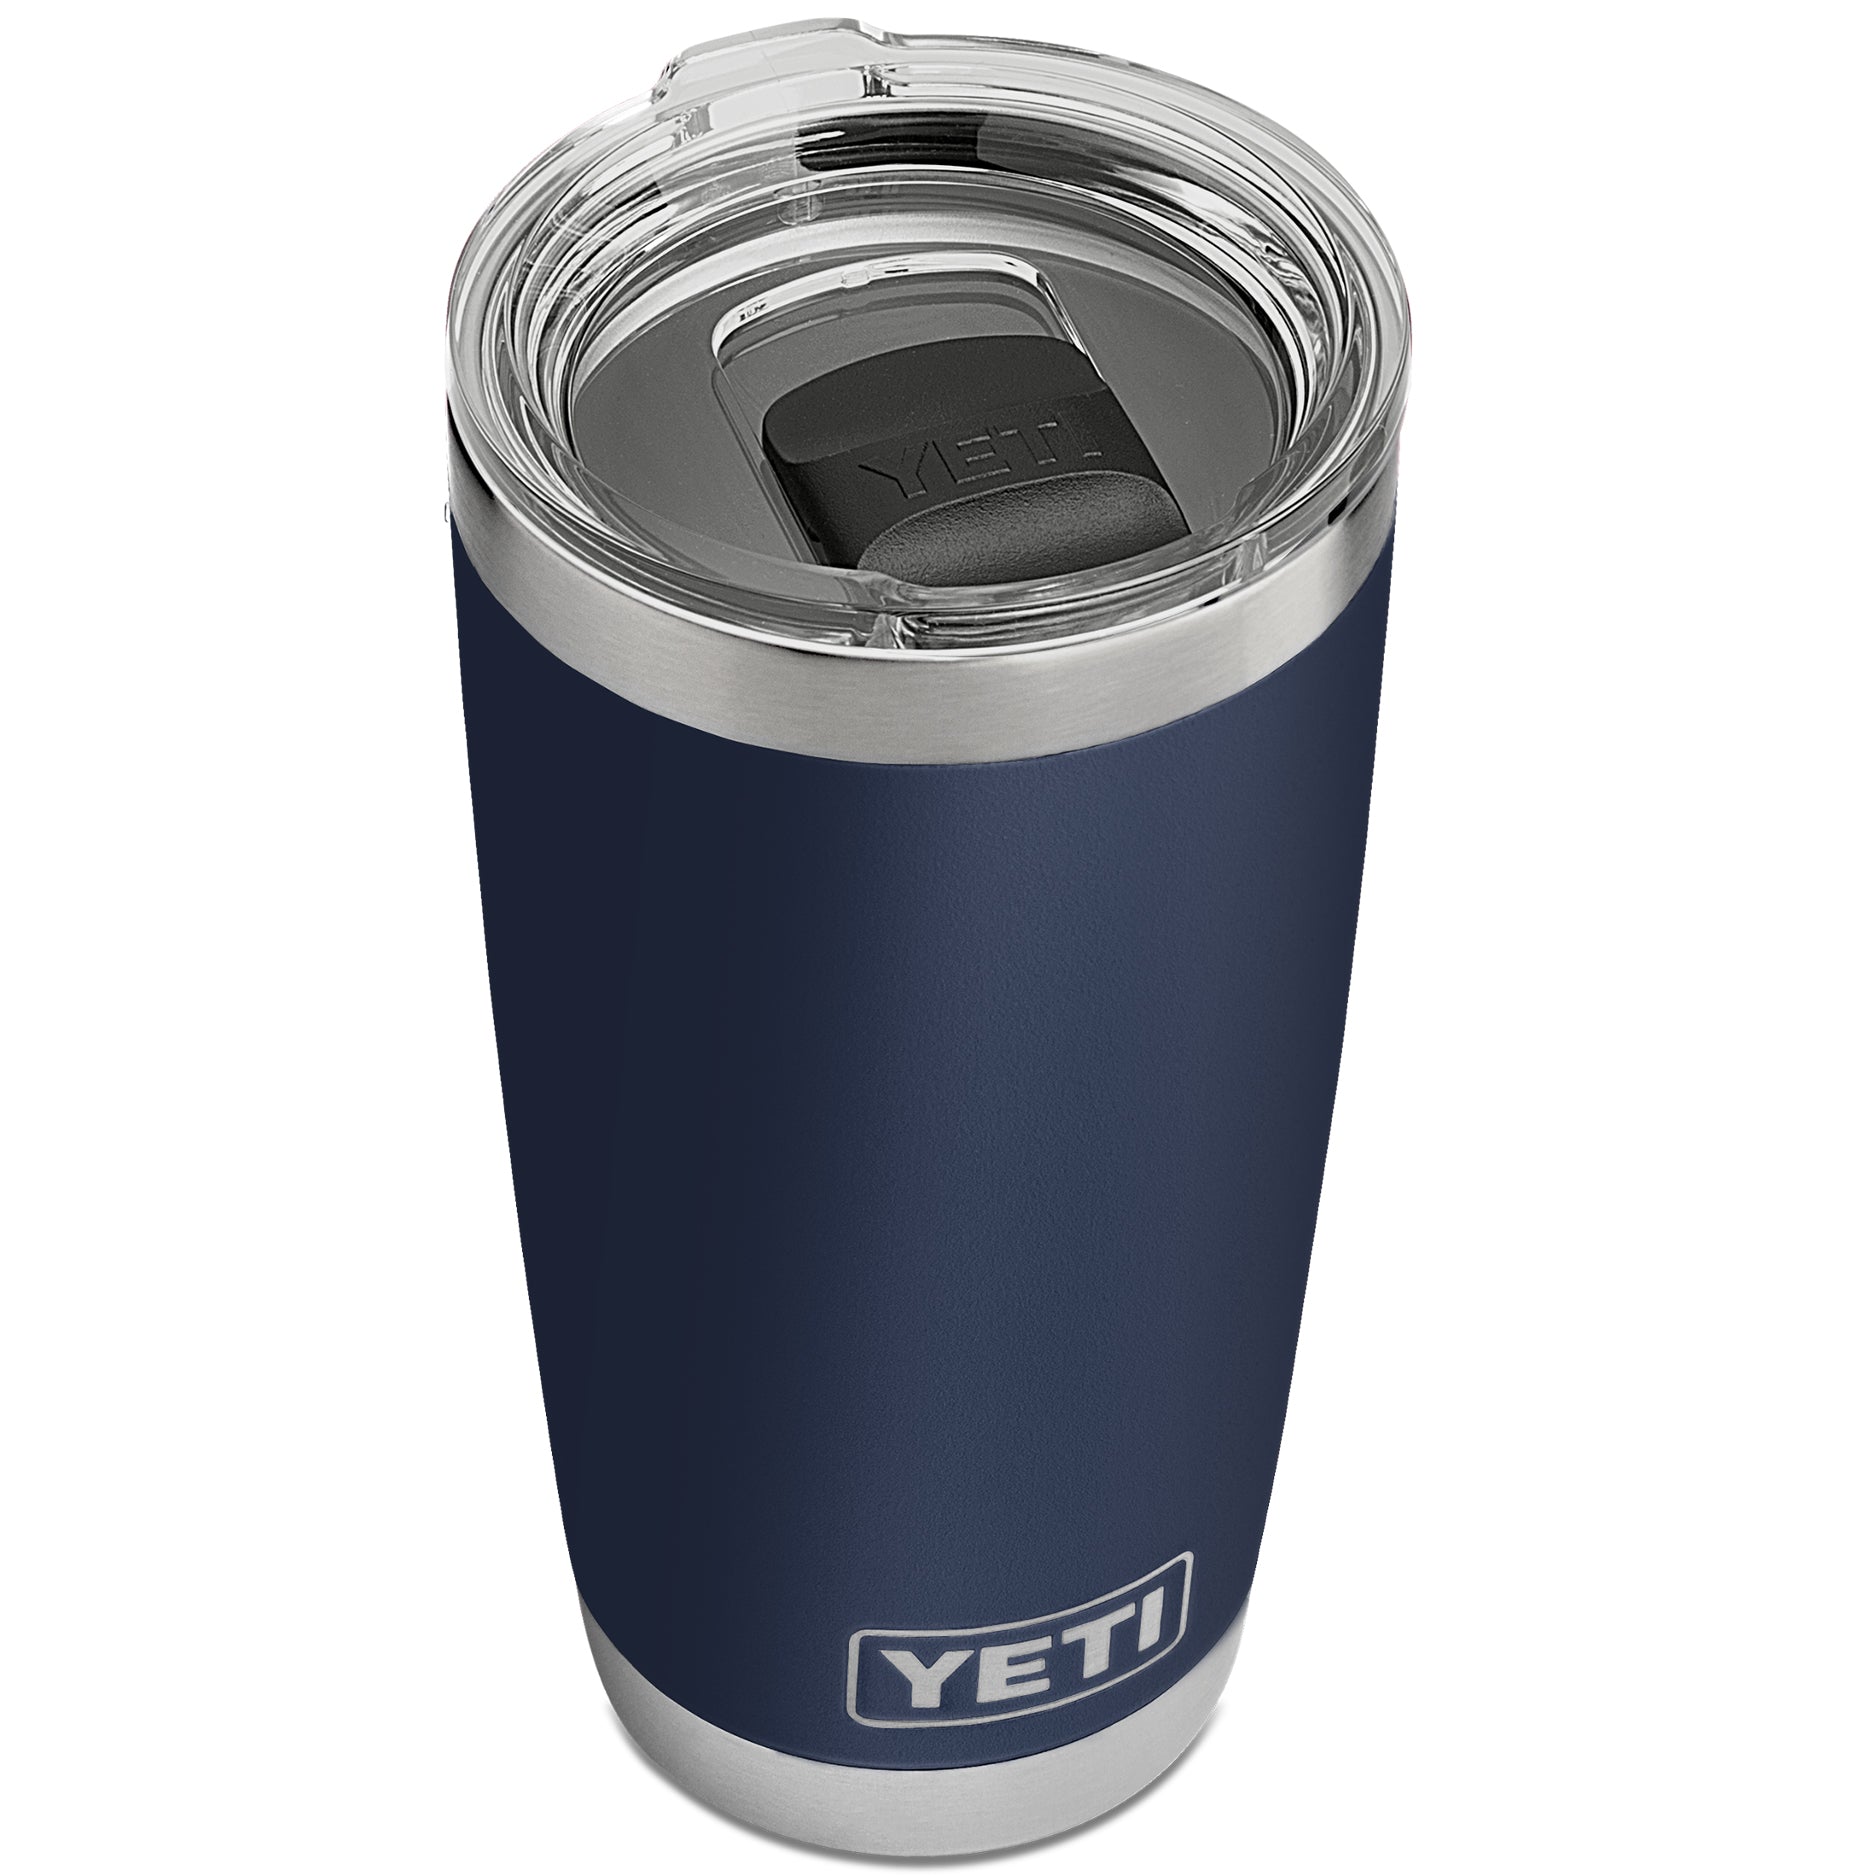 YETI-Rambler 4 oz cup 2 pk Charcoal